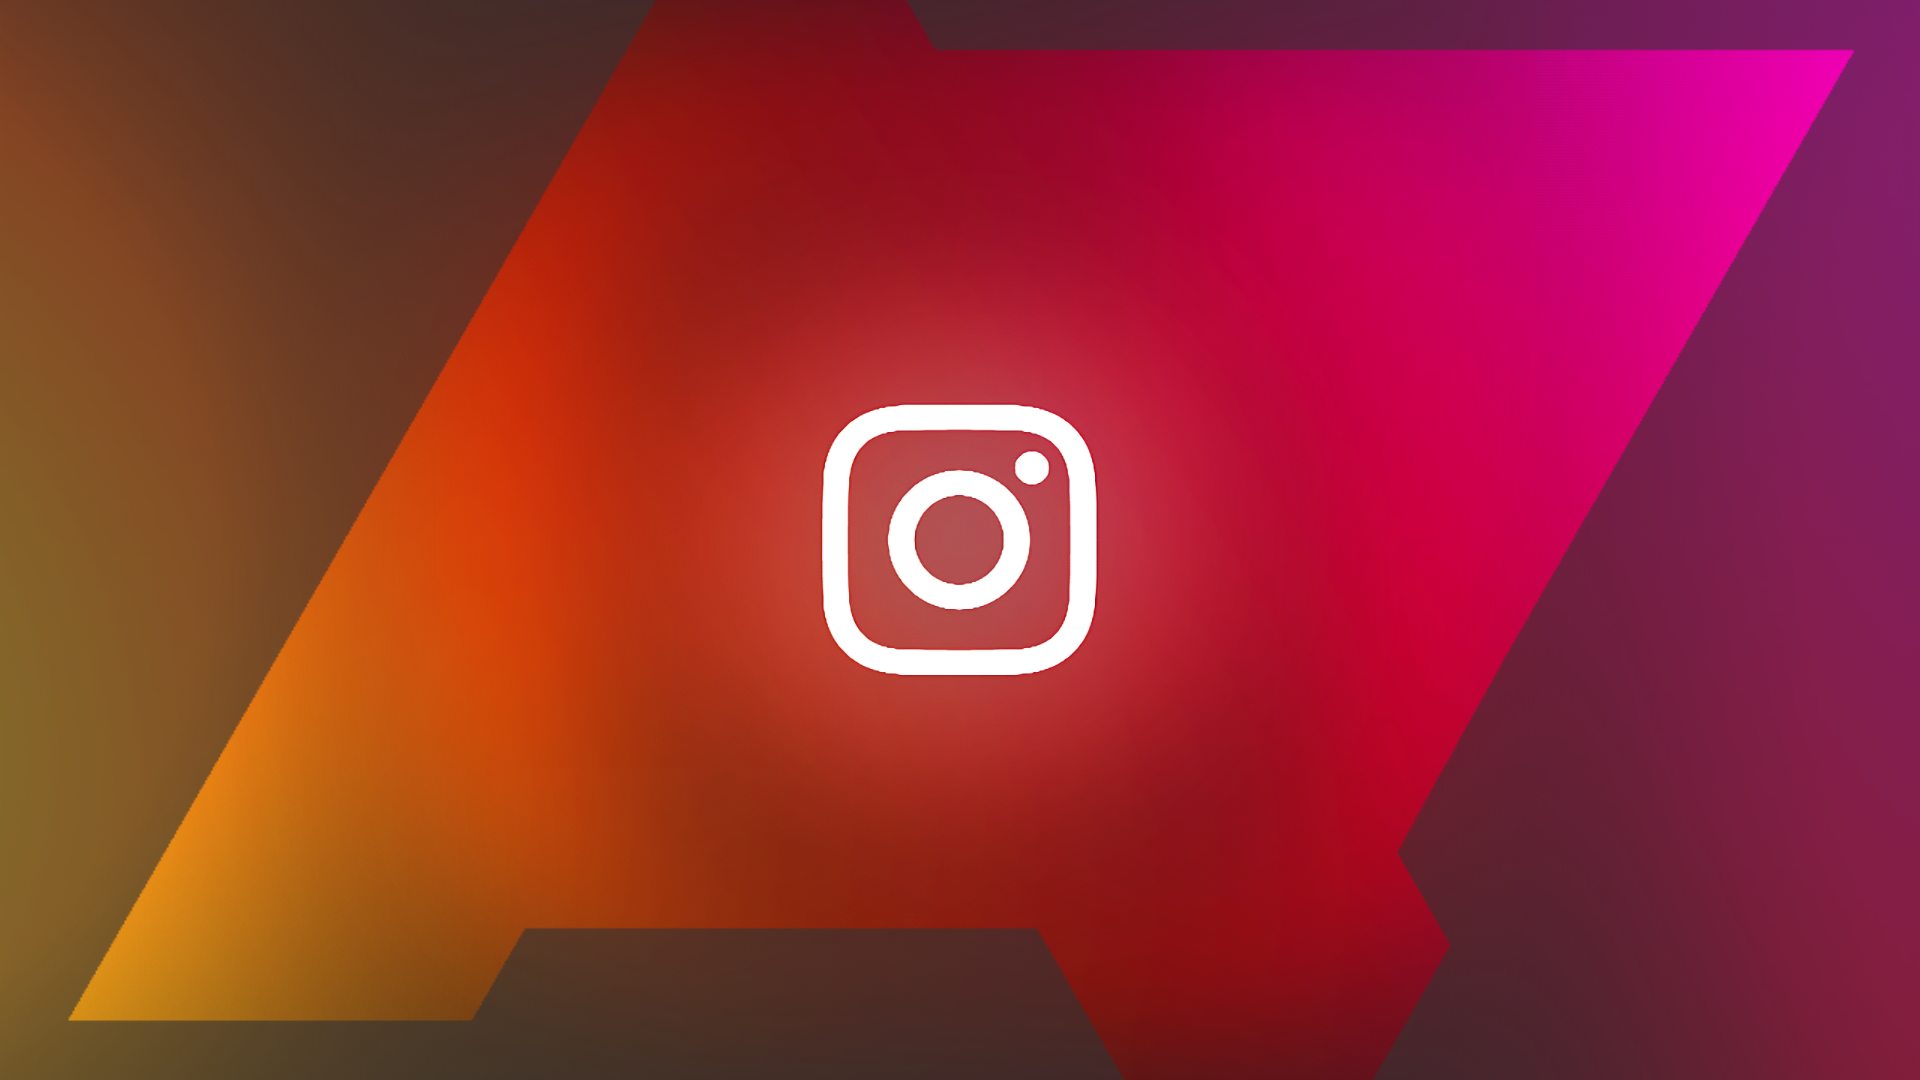 O logotipo do Instagram em um fundo vermelho.  O logotipo está dentro de uma silhueta do logotipo do Android Police.